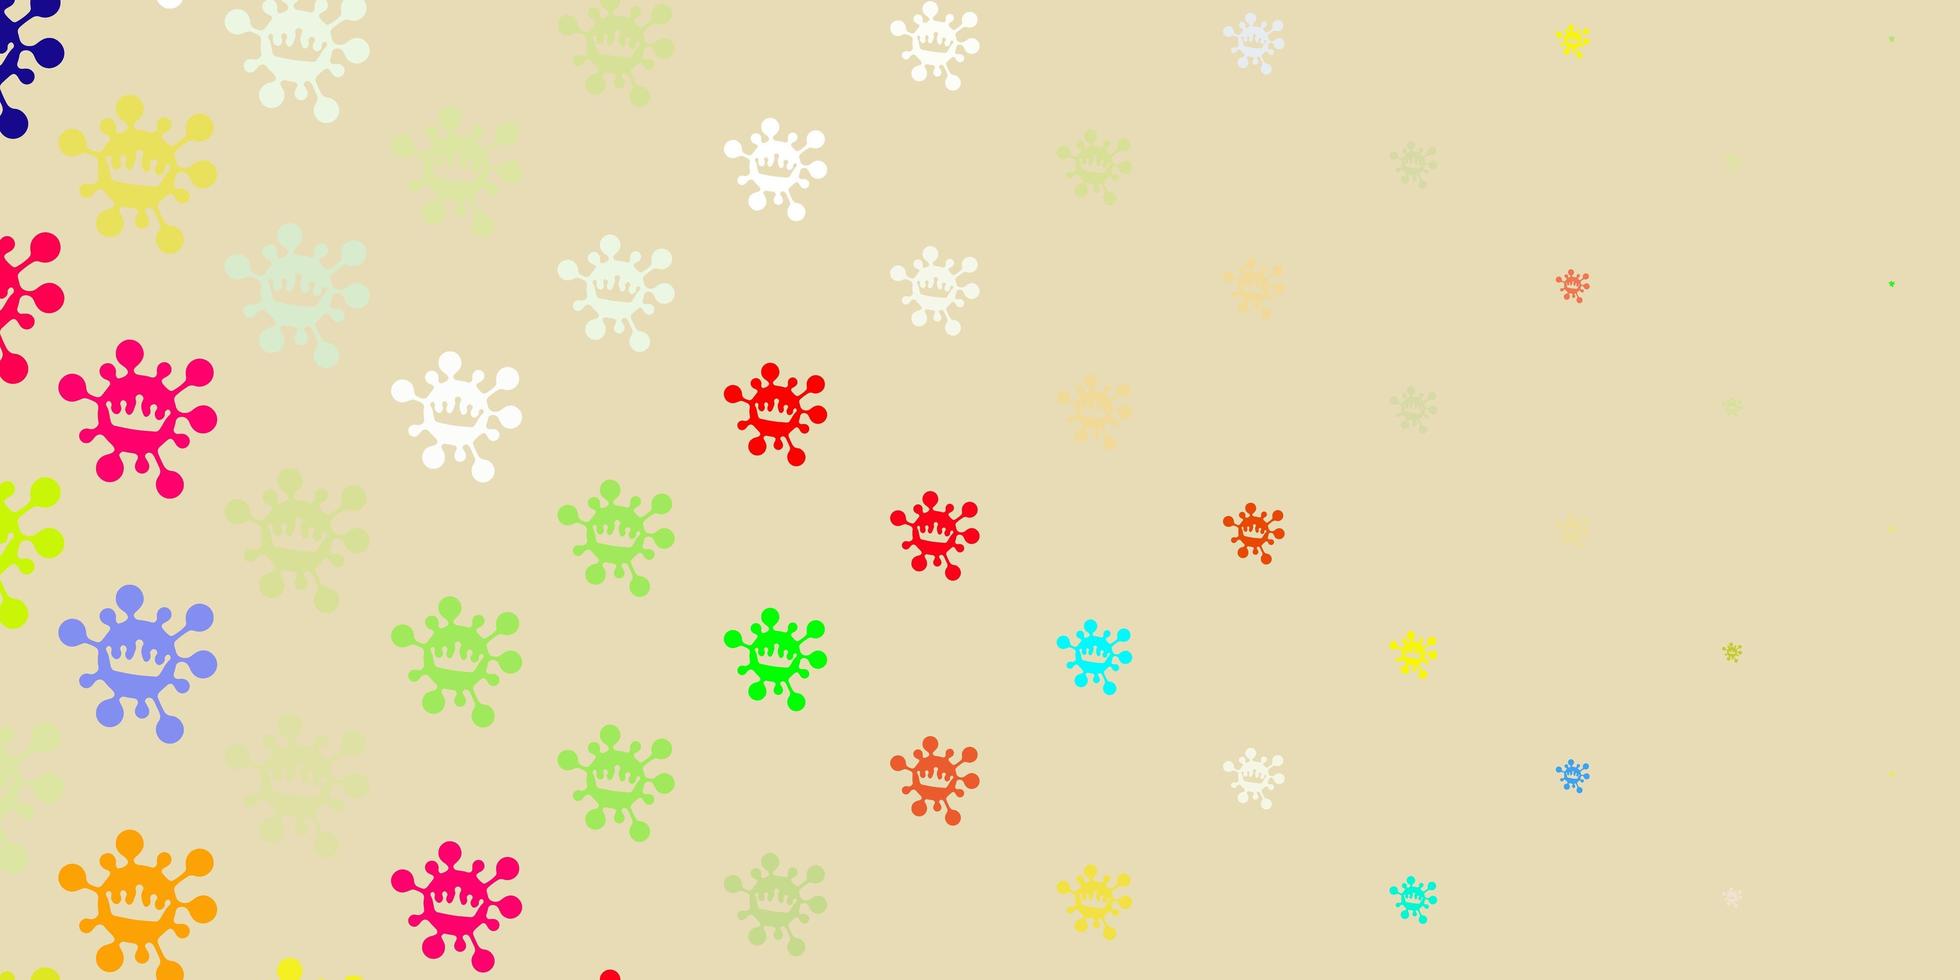 sfondo vettoriale multicolore chiaro con simboli di virus